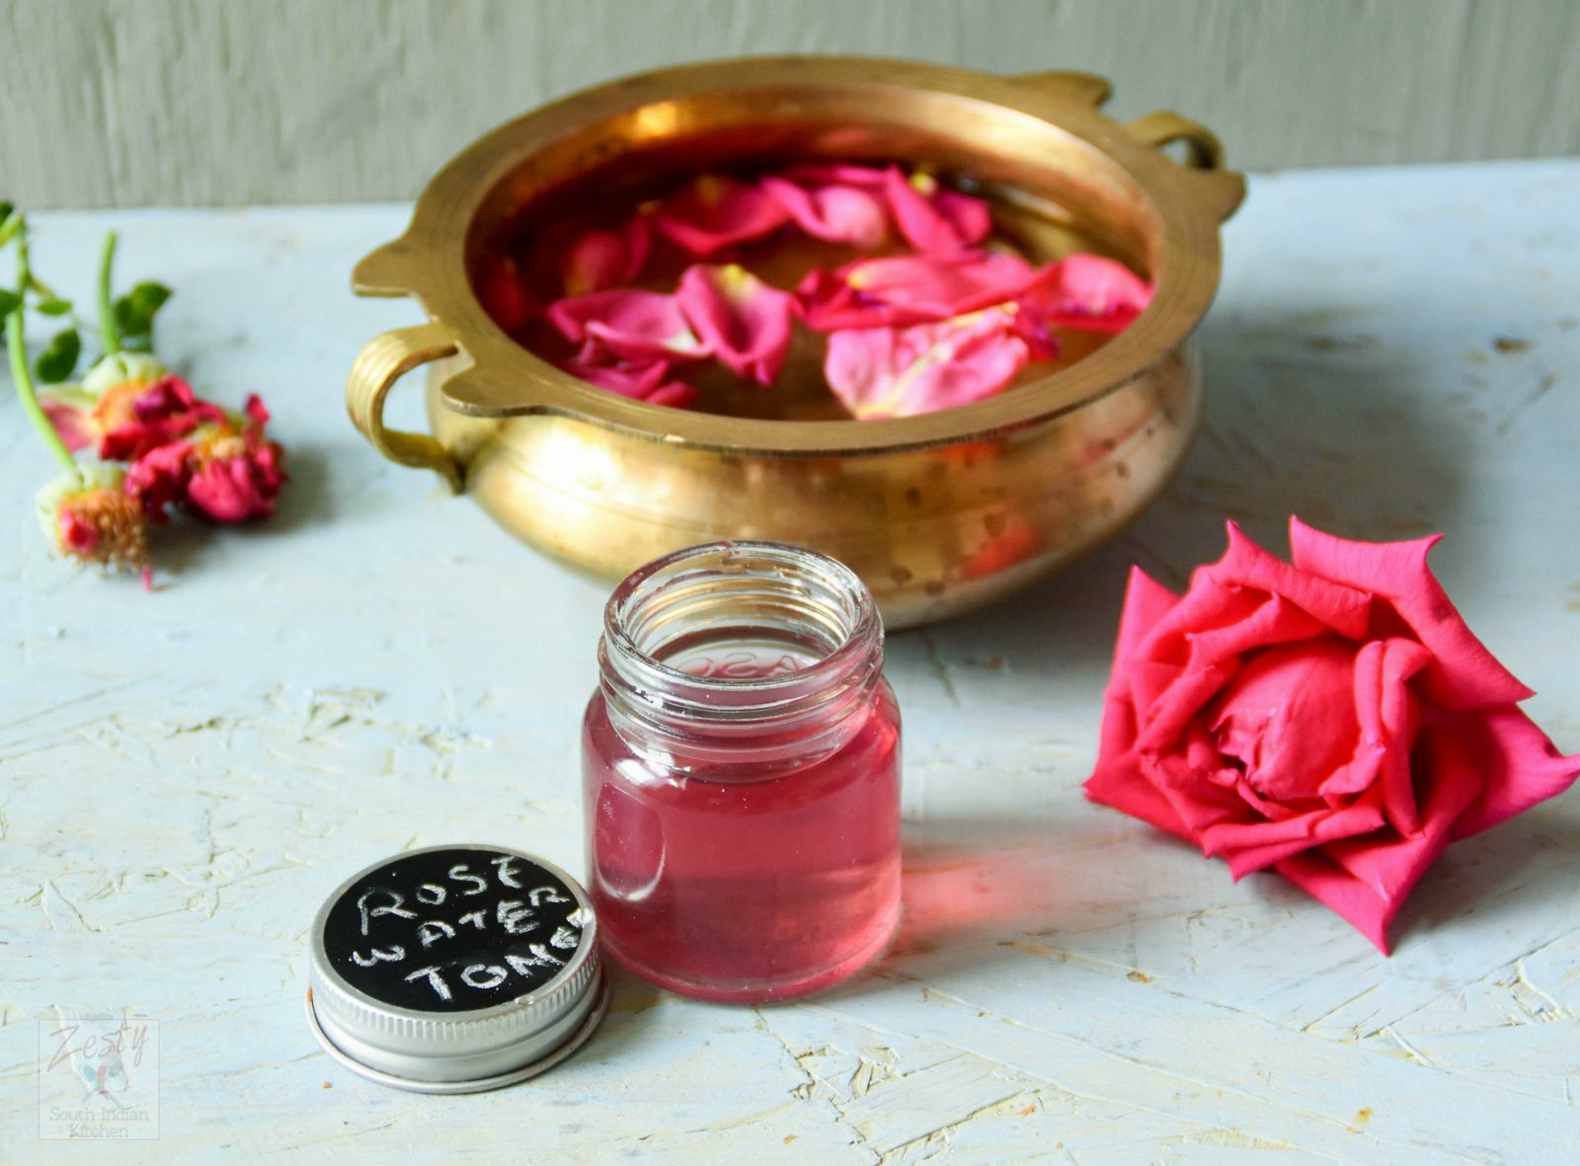 Rose water self-repair DIY instruction facial cleanser from rose dry skin care